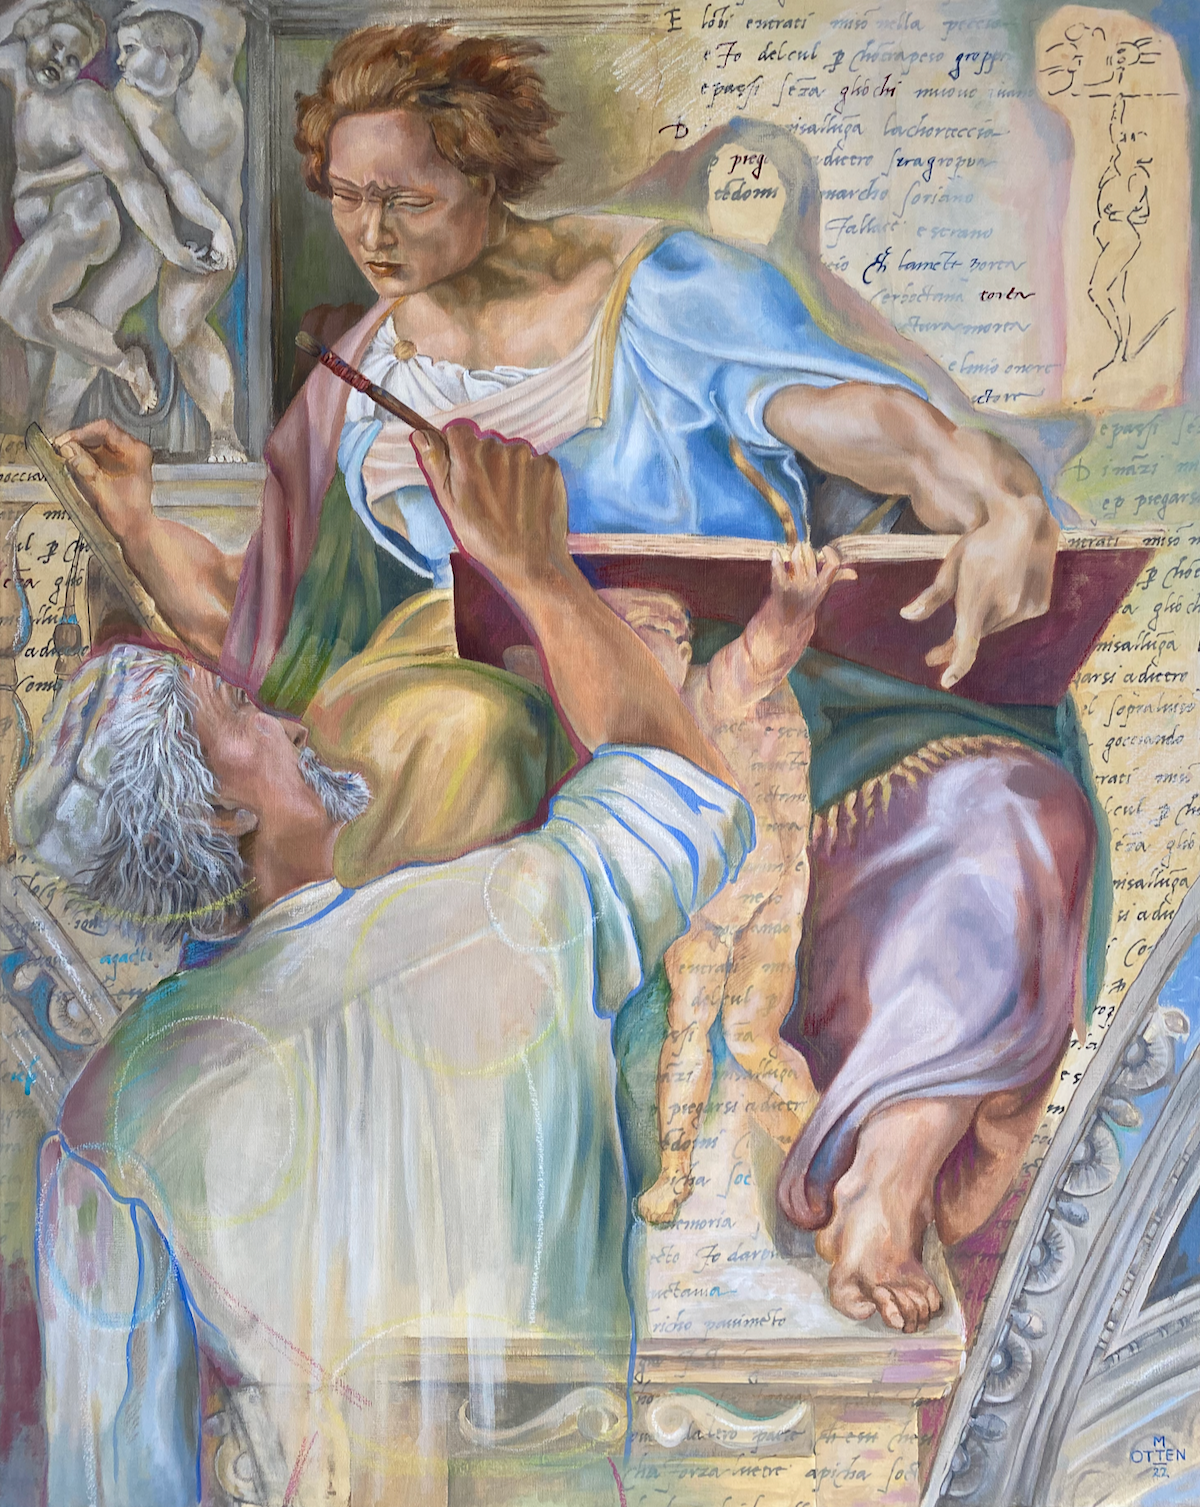 Michelangelo aan het werk in de Sixtijnse kapel met een detail van het plafond. Het detail is Daniel. Op het schilderij staan teksten van zijn brief en een door Michelangelo gemaakt spotprentje 